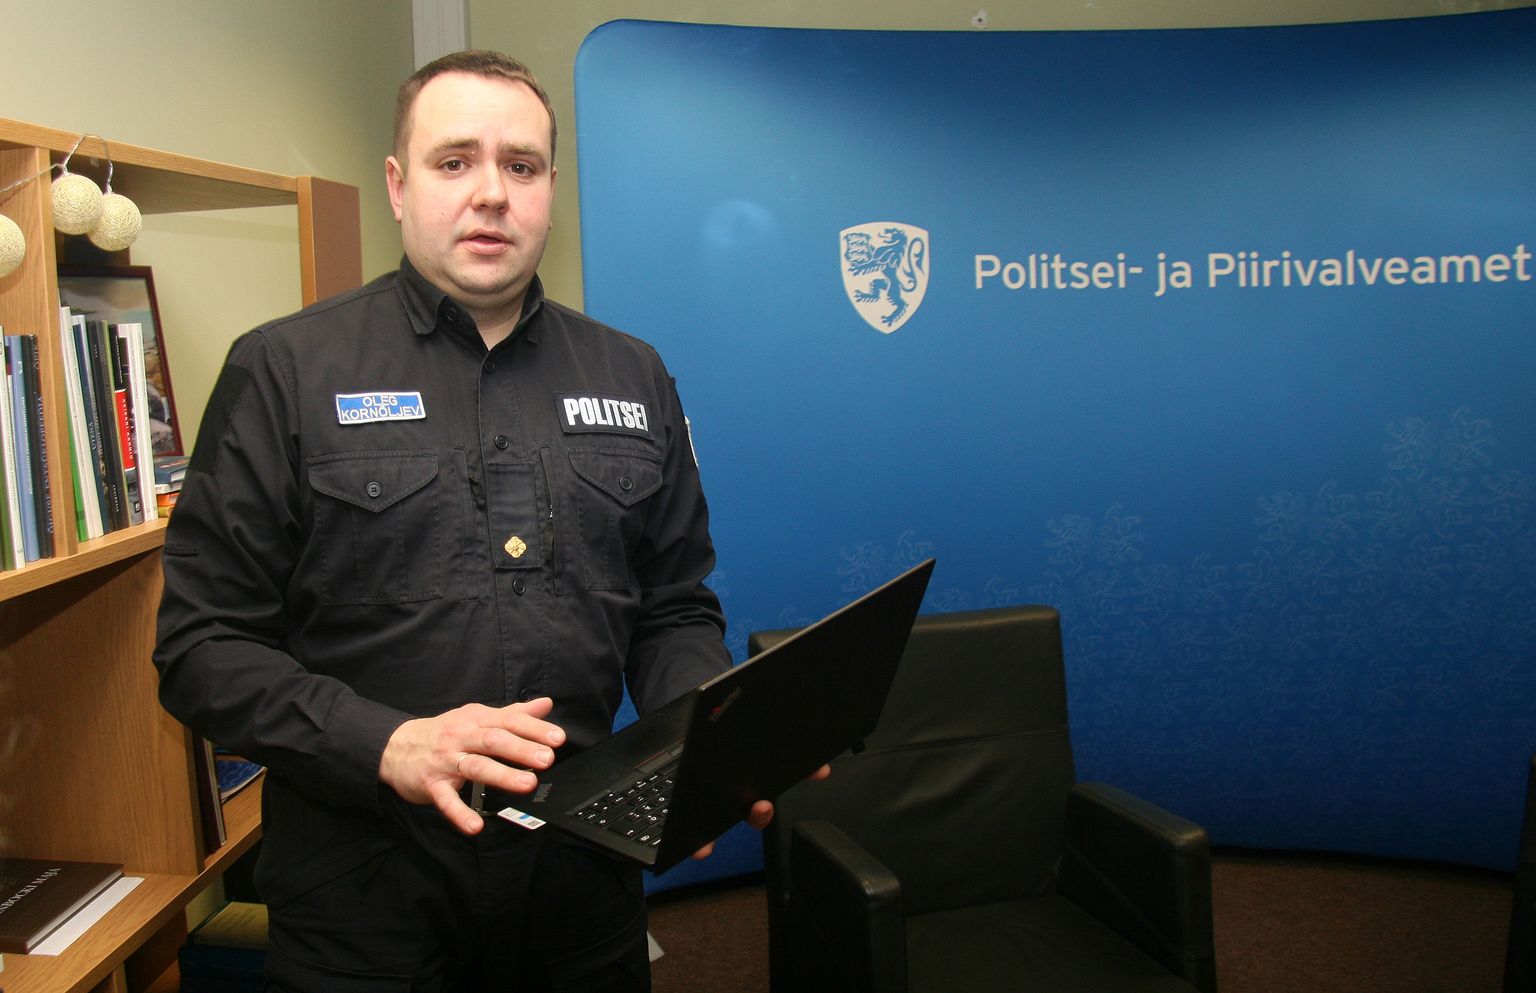 Jaanuaris ametisse asunud veebipolitseinik Oleg Kornõljev tuletab meelde, et seadused kehtivad ka internetis: midagi seadusvastast märgates tuleb sellest politseile teada anda.